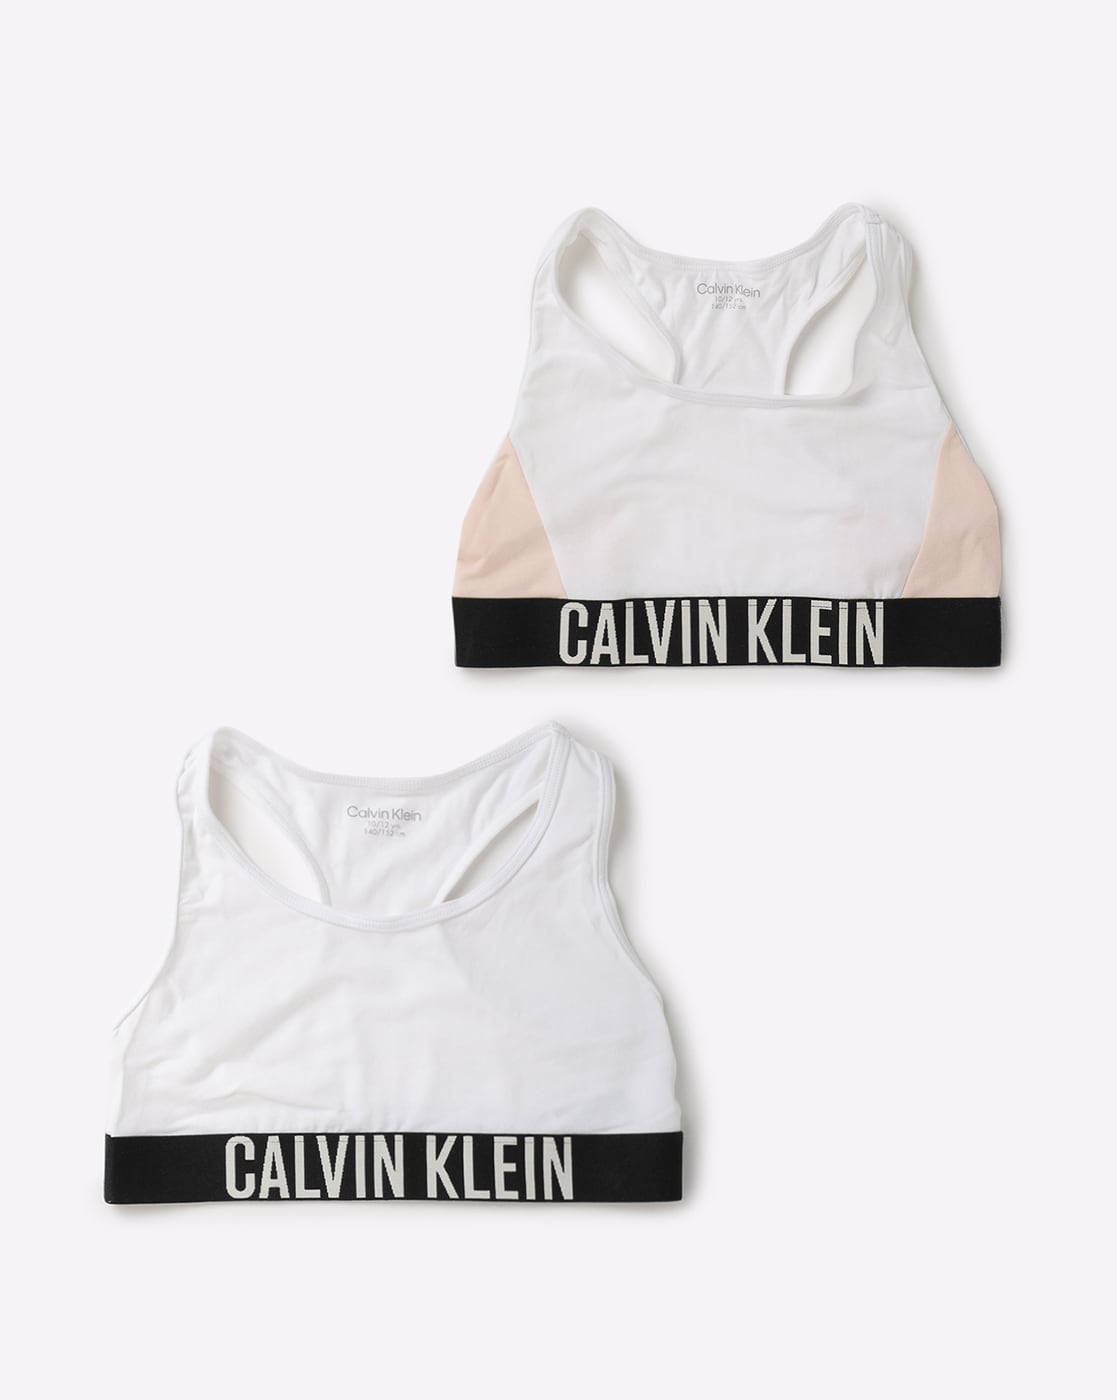 Buy White Bras & Bralettes for Girls by CALVIN KLEIN Online